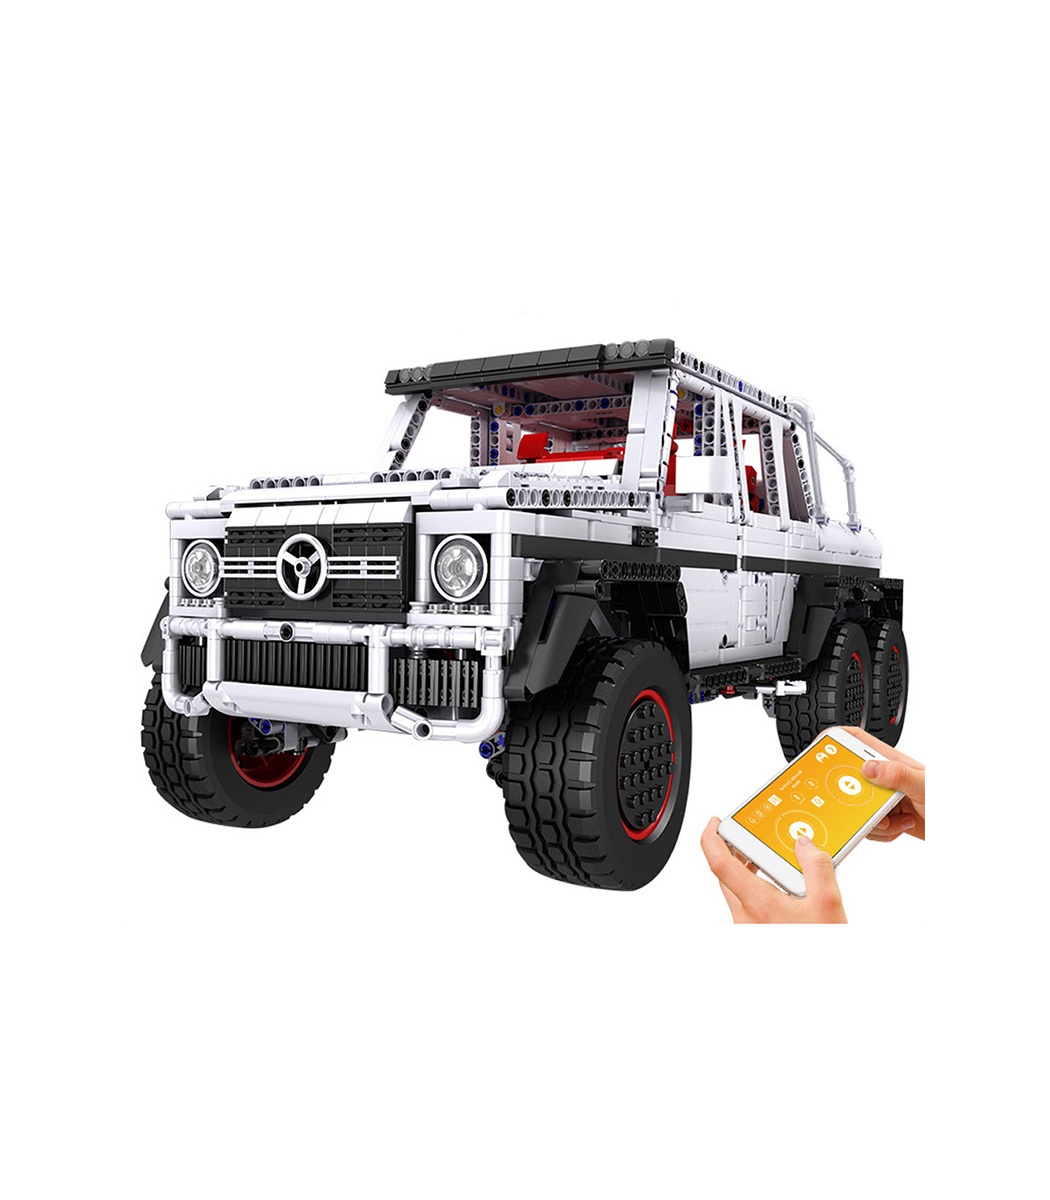 https://www.buildingtoystore.com/14211-superlarge_default/mold-king-13061-g700-6x6-suv-tout-terrain-camion-telecommande-voiture-blocs-de-construction-ensemble-de-jouets.jpg